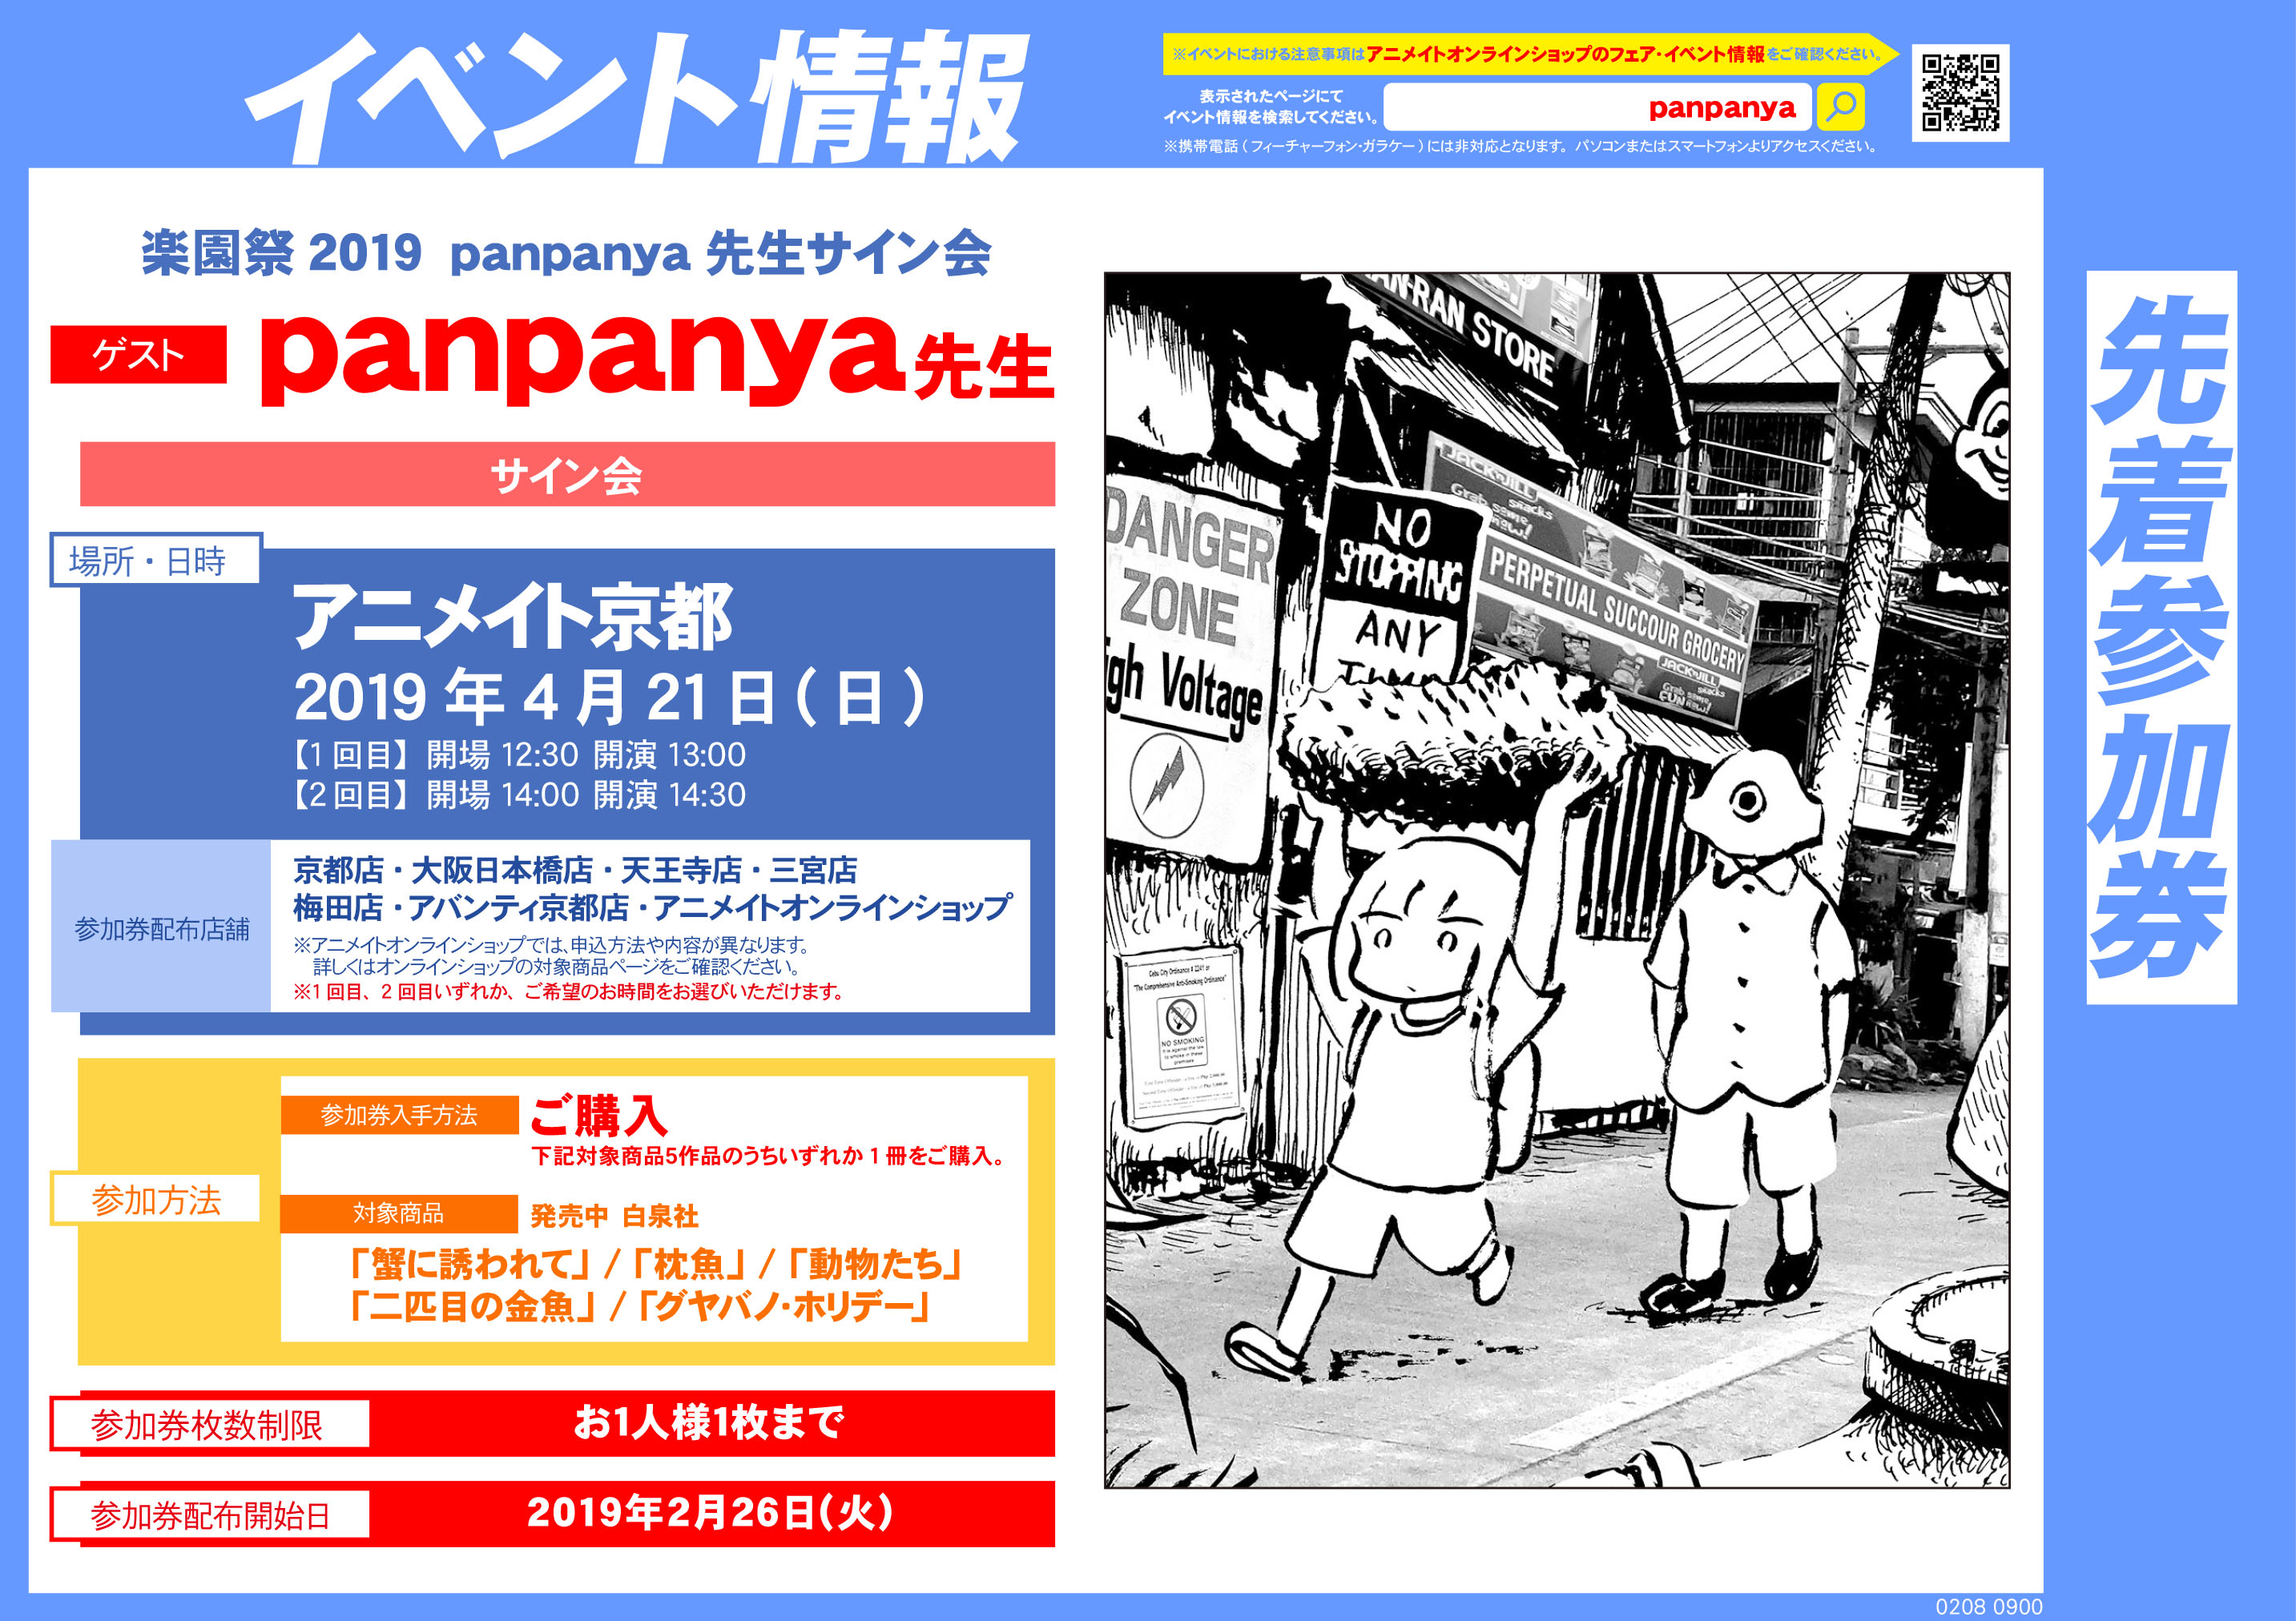 19年4月21日 日 楽園祭19 Panpanya先生サイン会開催決定 アニメイト京都